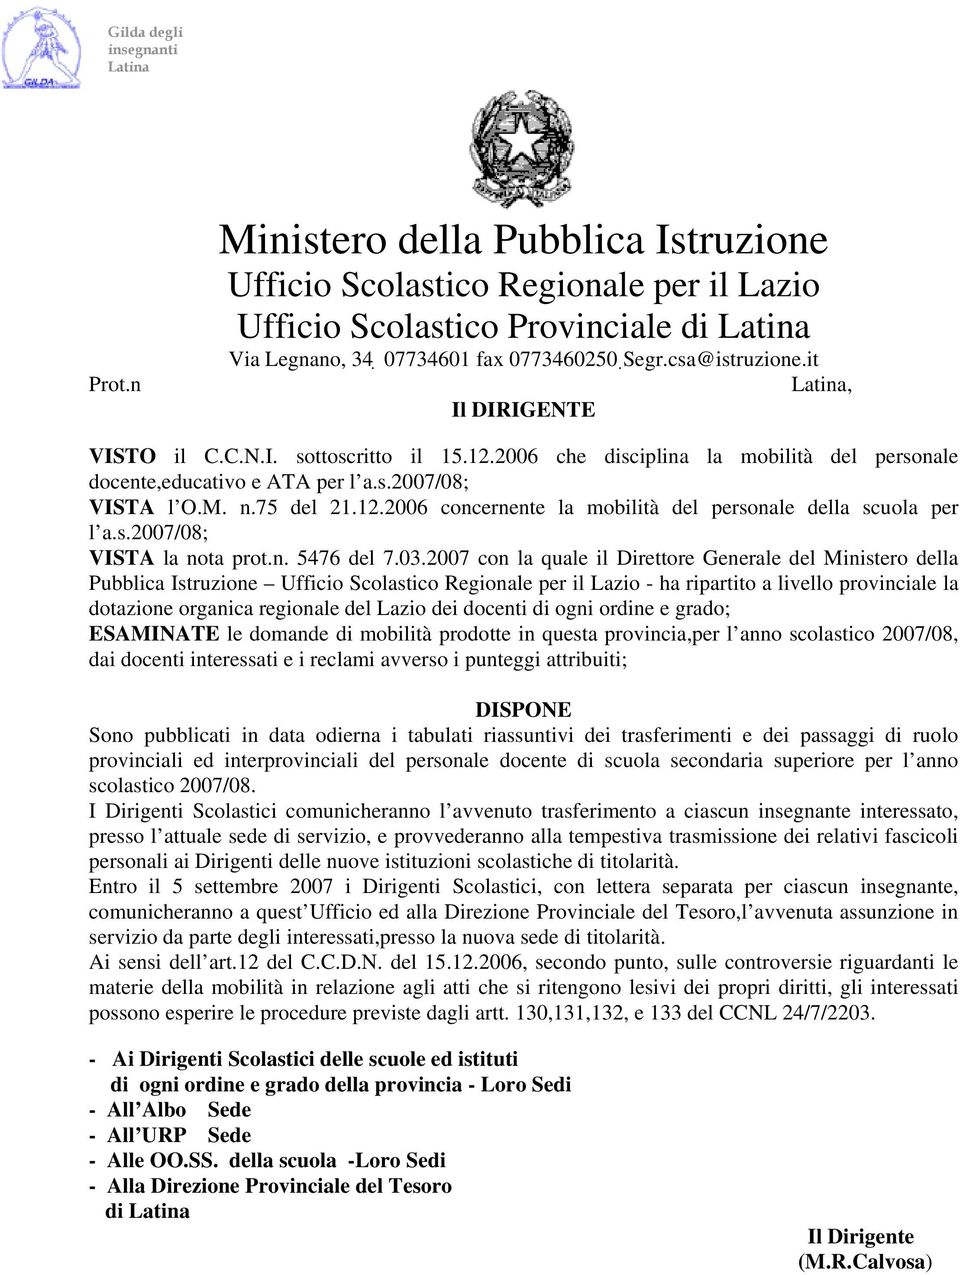 2007 con la quale il Direttore Generale del Ministero della Pubblica Istruzione - ha ripartito a livello provinciale la dotazione organica regionale del Lazio dei docenti di ogni ordine e grado;